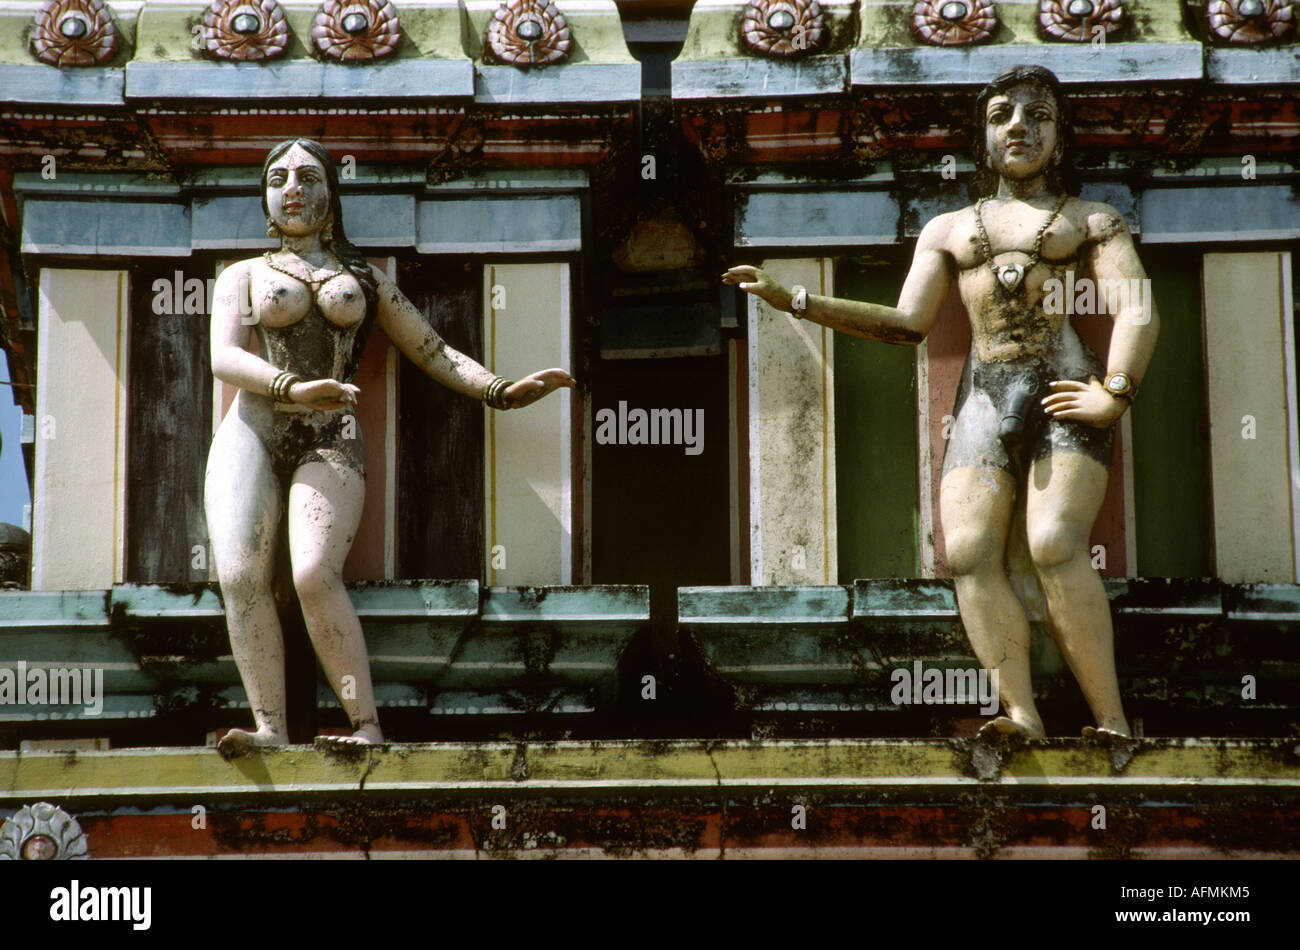 India Kerala Alleppey religione censurato tempio indù gopuram figure con i genitali verniciato di nero Foto Stock